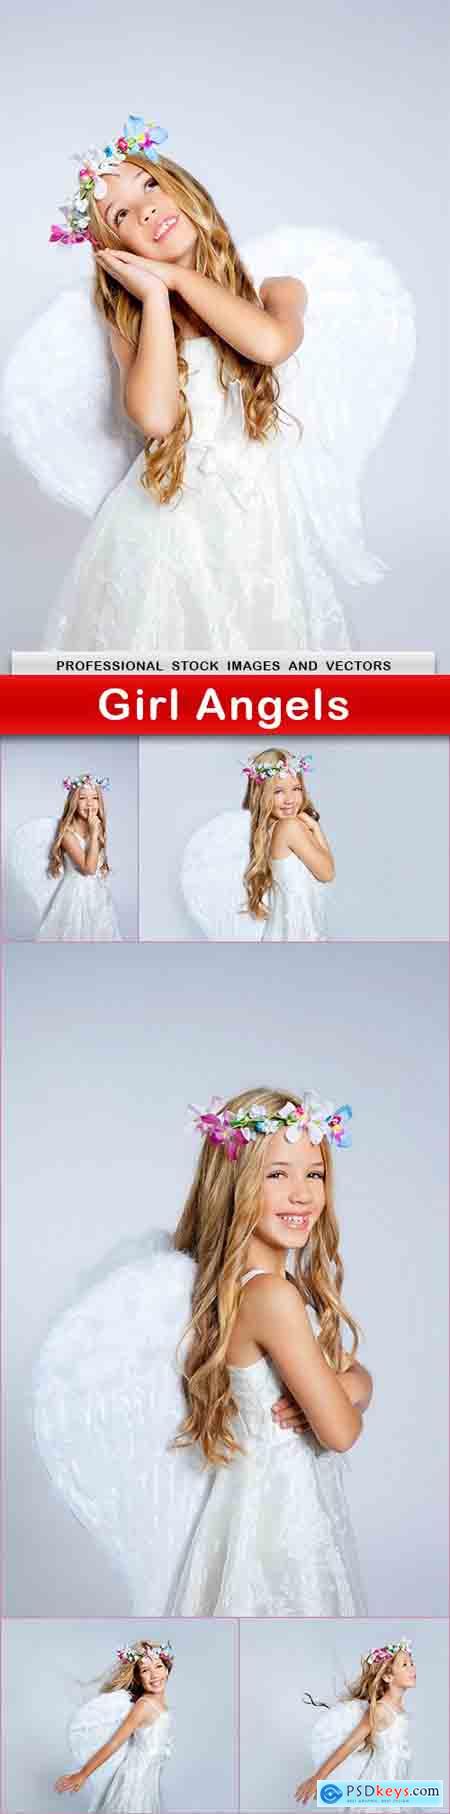 Girl Angels - 6 UHQ JPEG